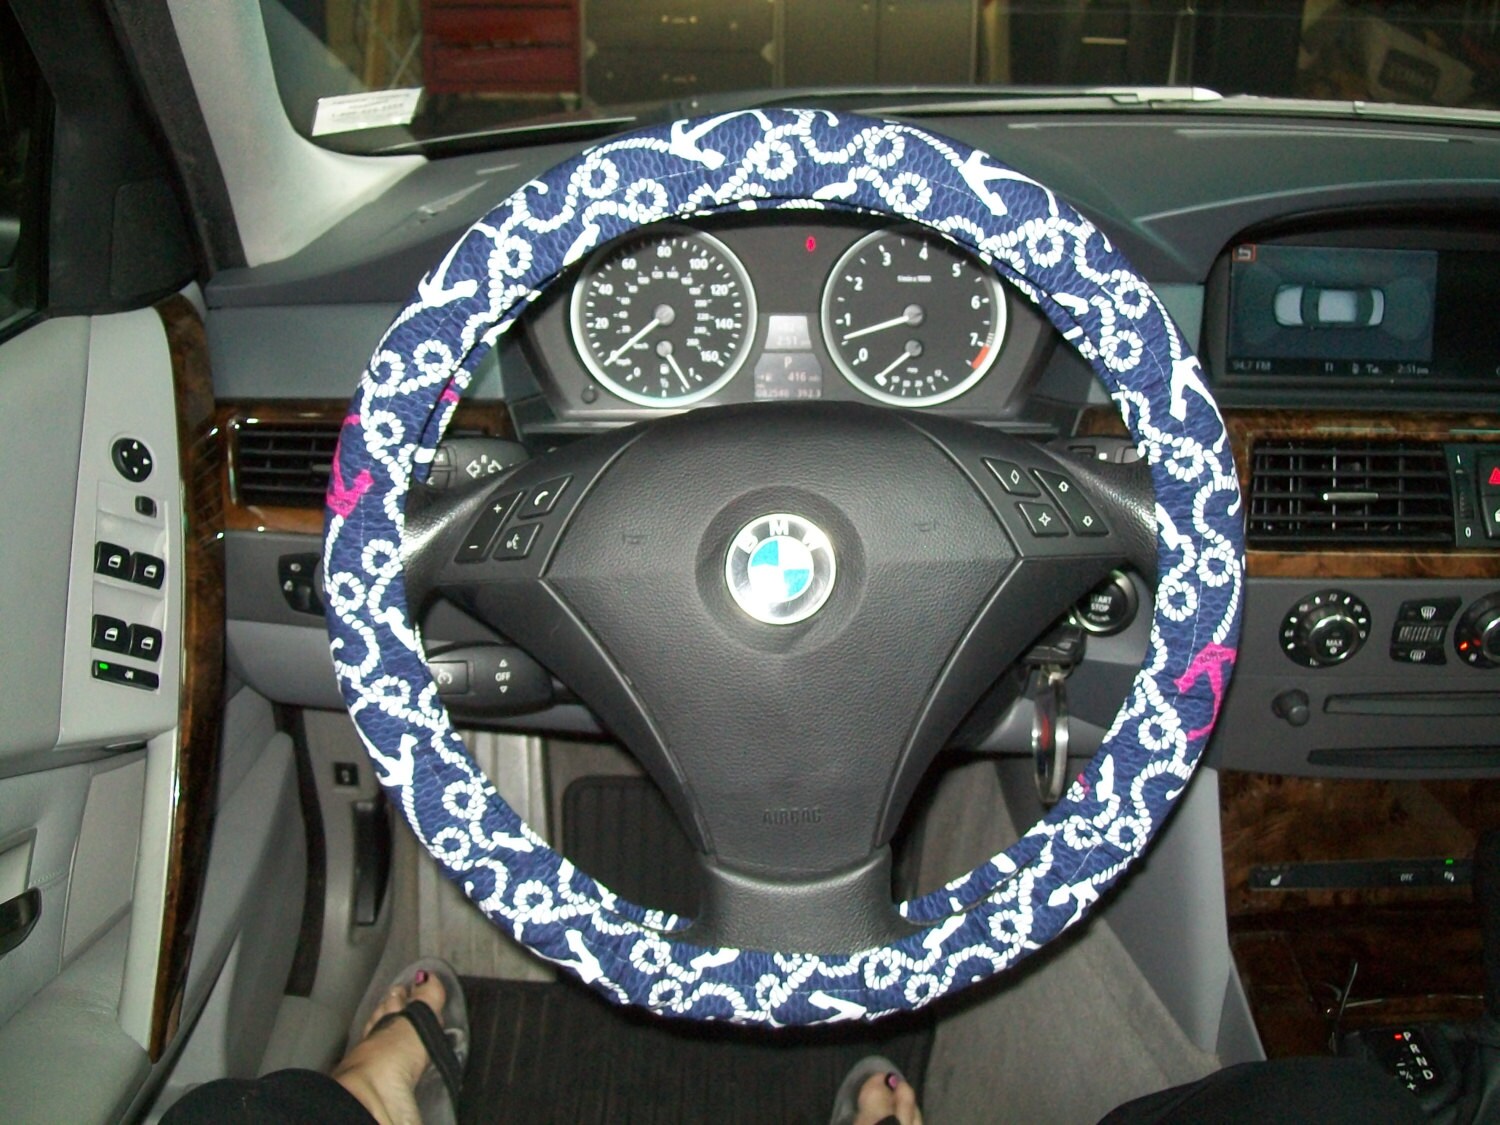 Designer Inspired Steering Wheel Cover